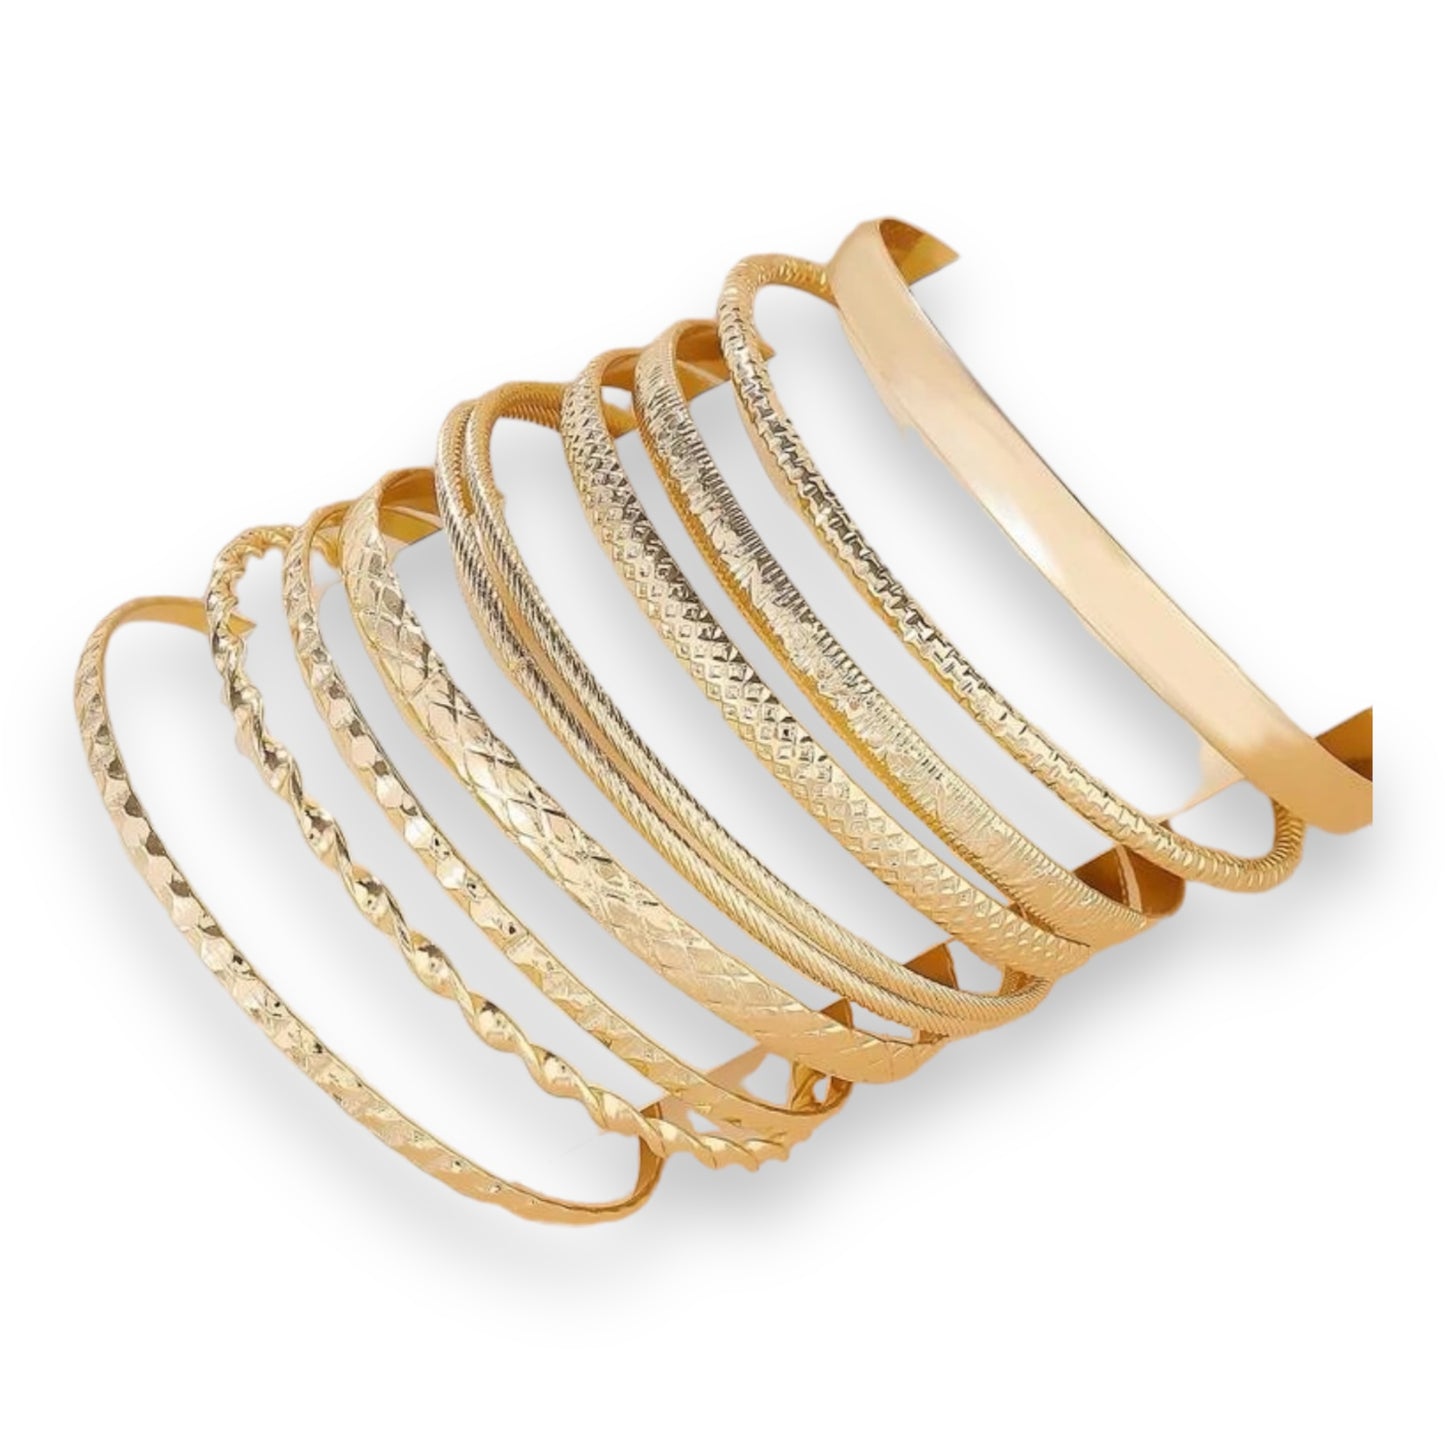 Kinky Pleasure - S020 - Exclusive 10-Piece Silver & Gold Bracelet Set for Women - 2 Colours